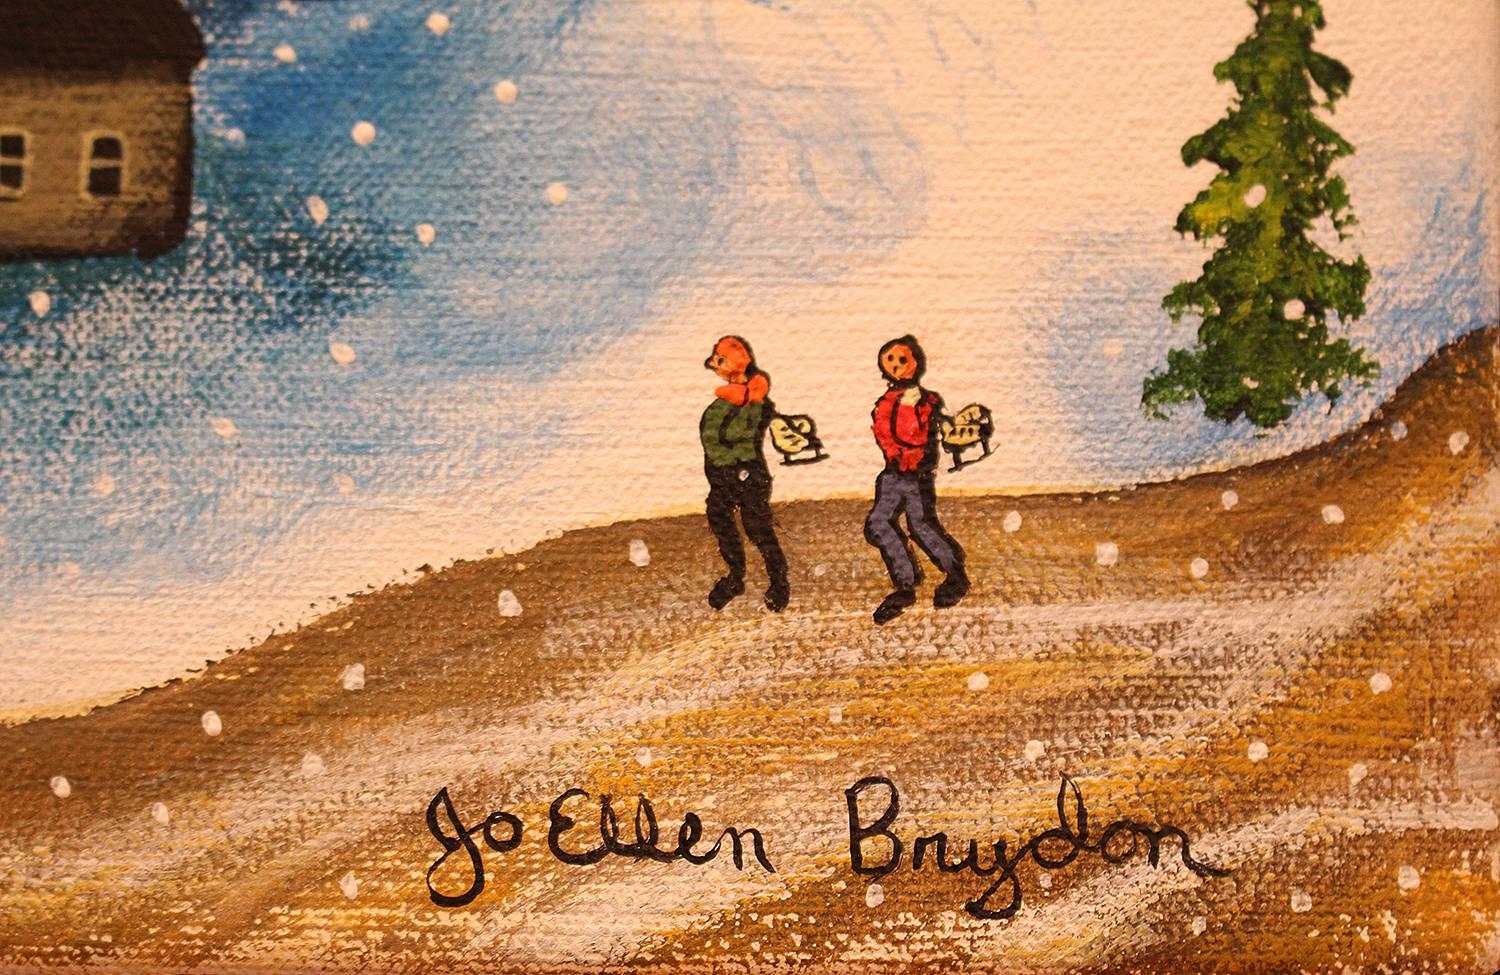 A Winter Day Skaking - Beige Landscape Painting by Jo Ellen Brydon